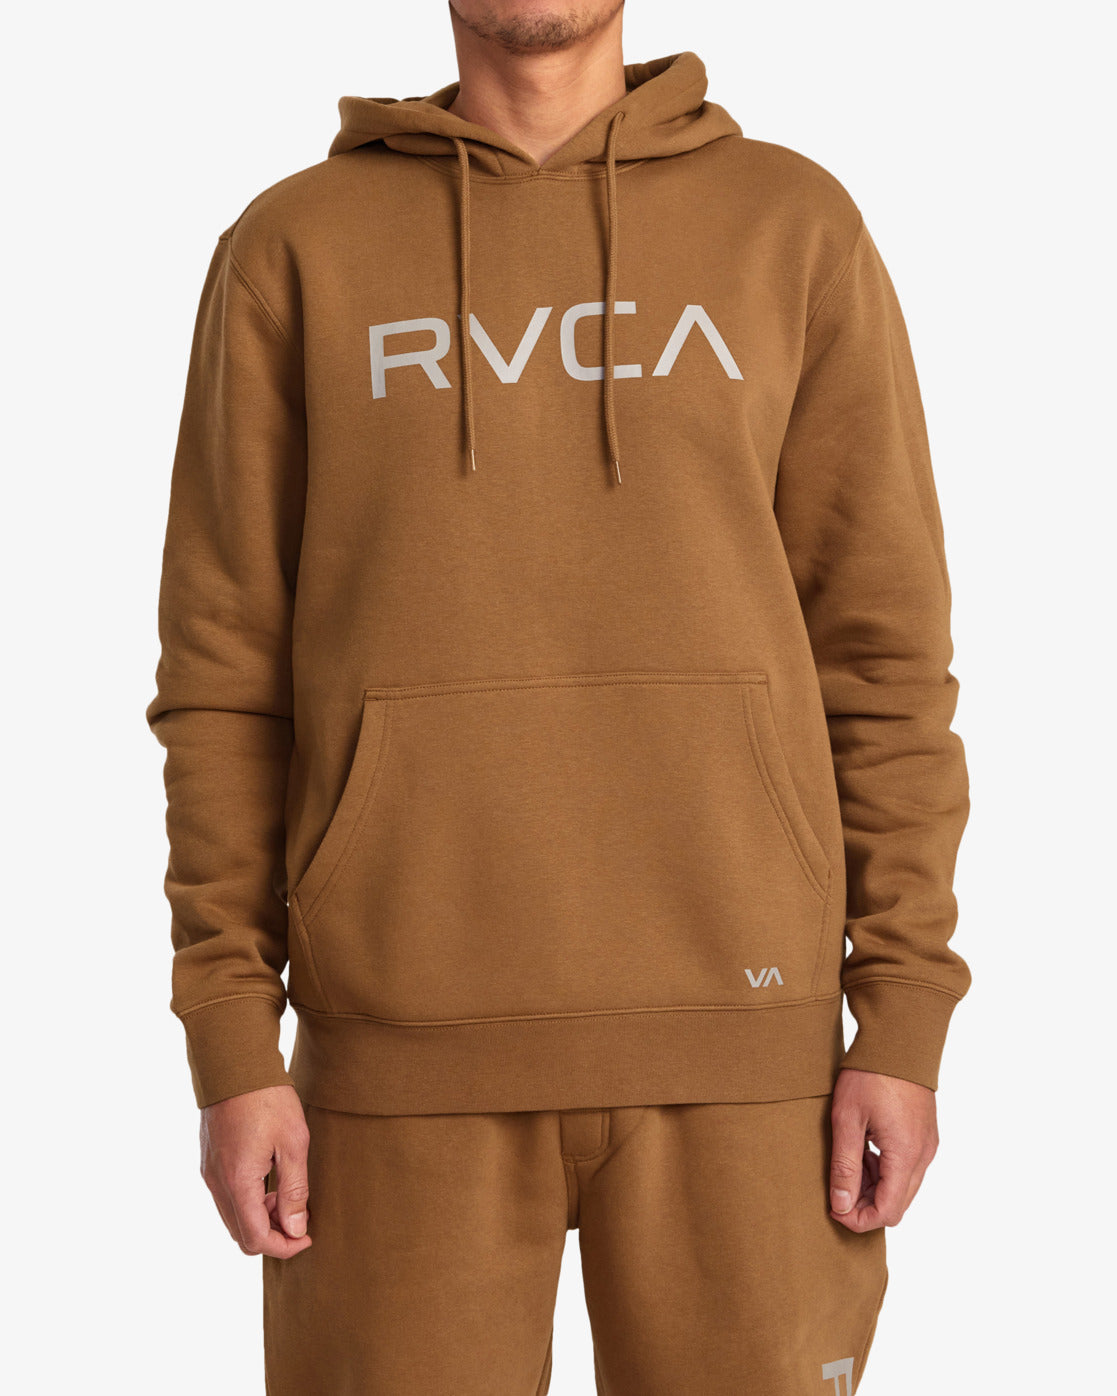 Big RVCA Pullover Hoodie - Rawhide